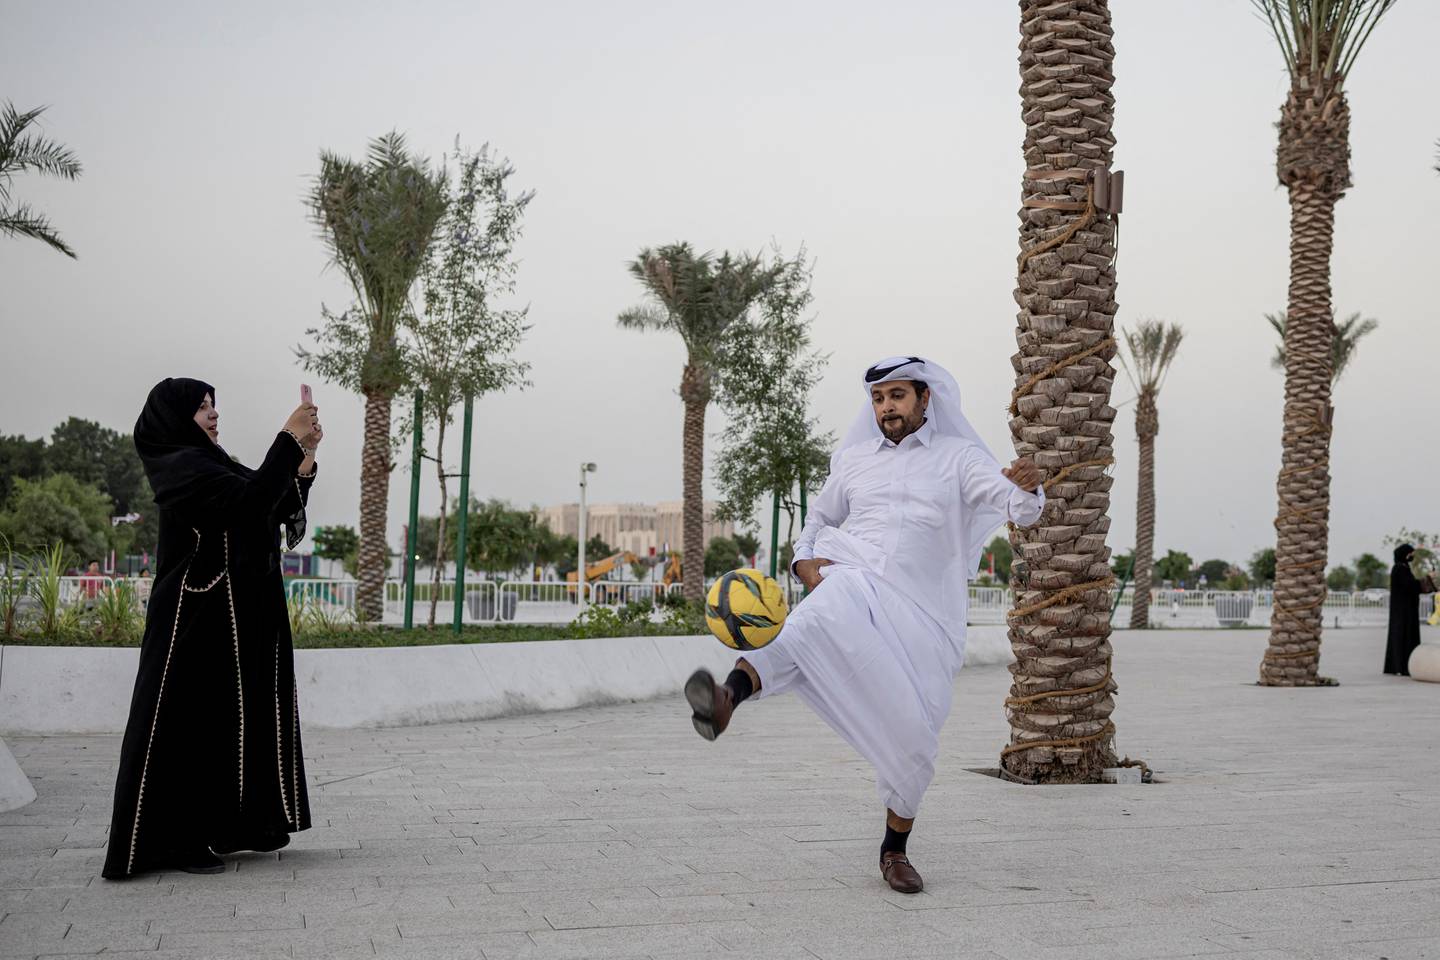 Bildet viser en mann i Qatar som spiller fotball i gata.